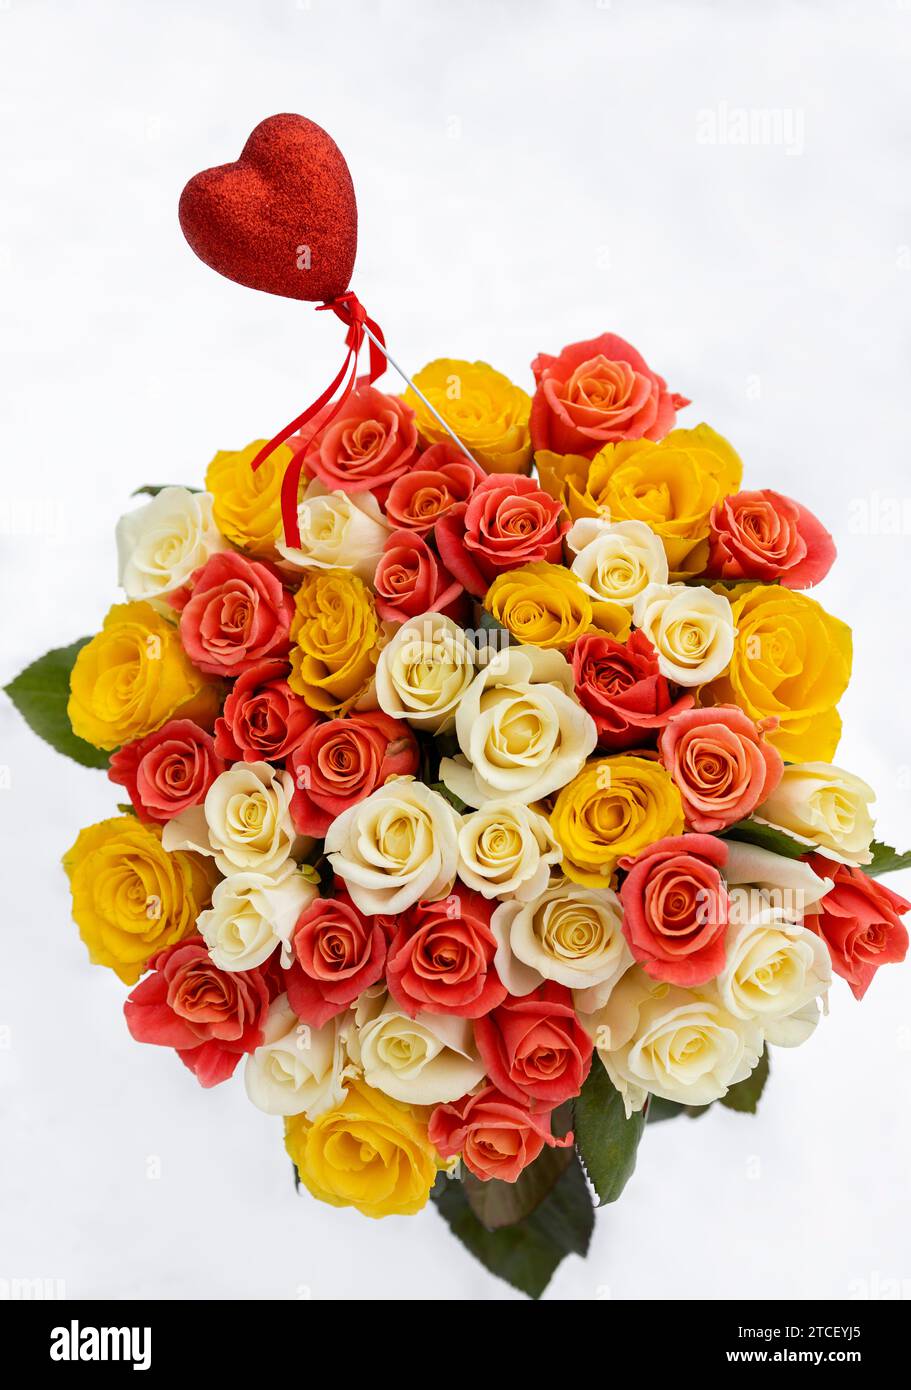 Buntes Blumenstrauß von Rosenblüten aus mehrfarbigen Rosen in drei Farben, auf weißem Schneehintergrund. Rotes Souvenir-Herz ragt aus einem Blumenstrauß hervor. Valen Stockfoto